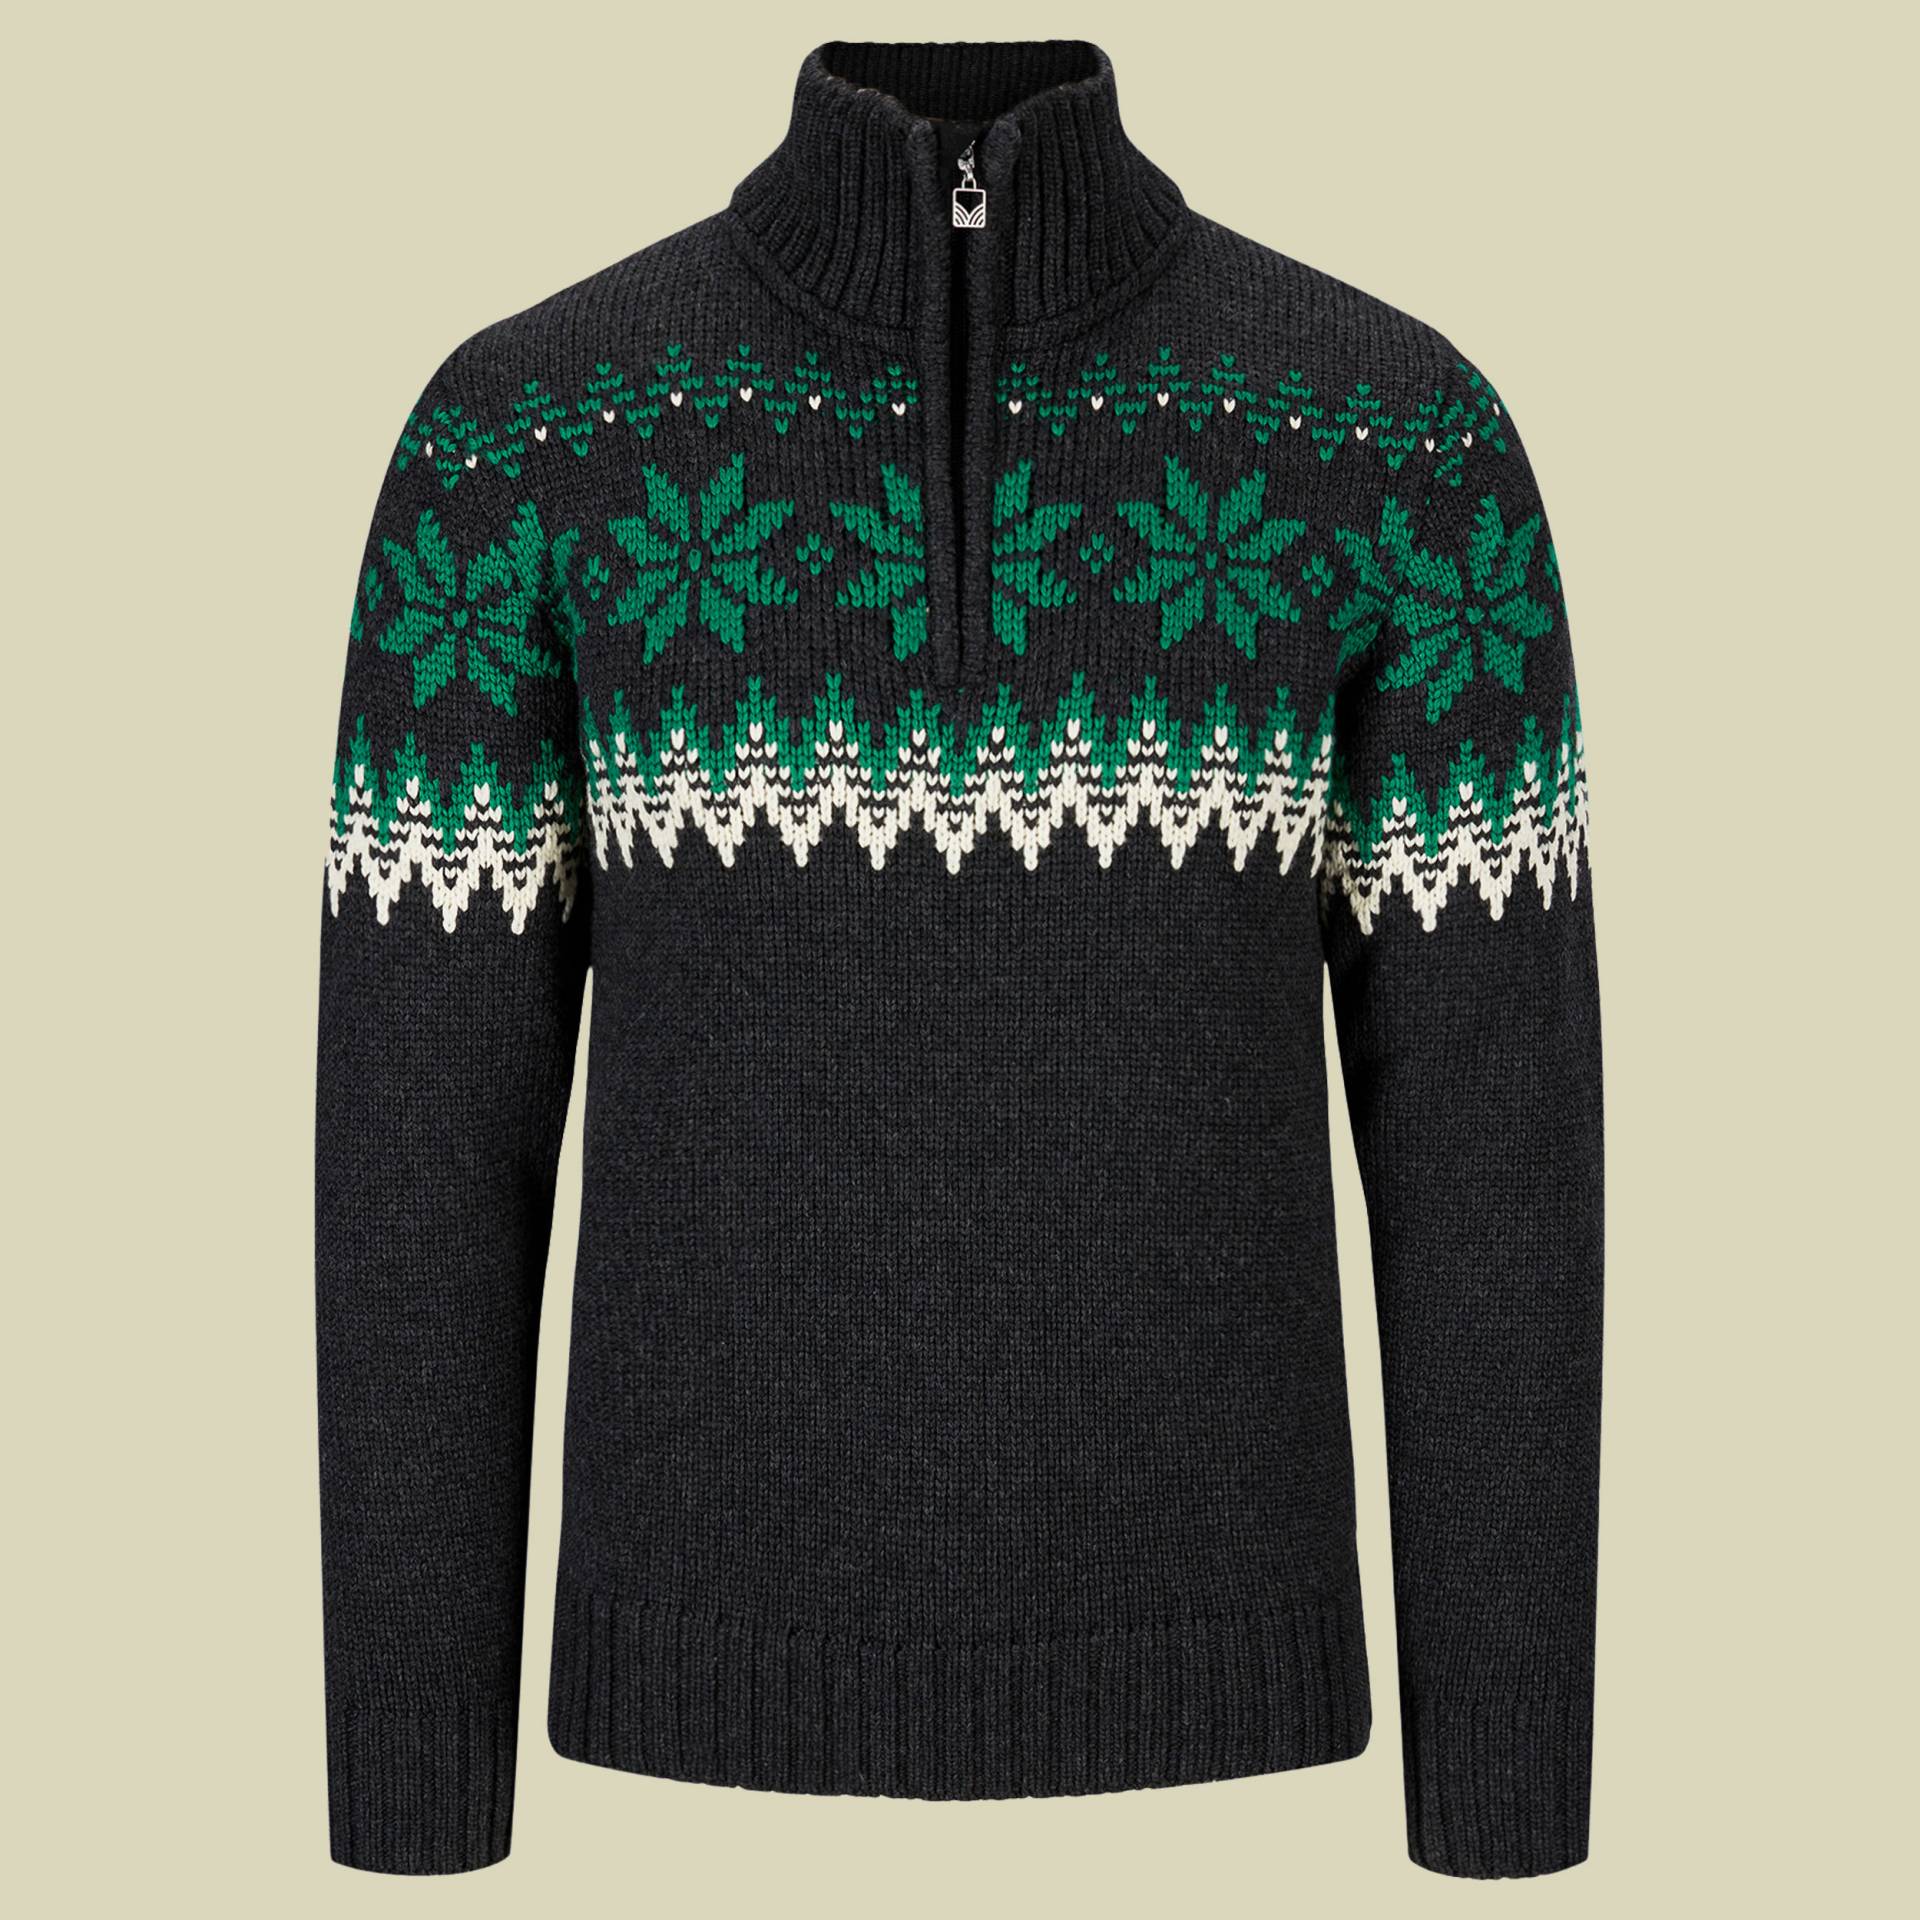 Myking Sweater Men mehrfarbig 1 Größe XL Farbe dark charcoal/bright green/off white von Dale of Norway